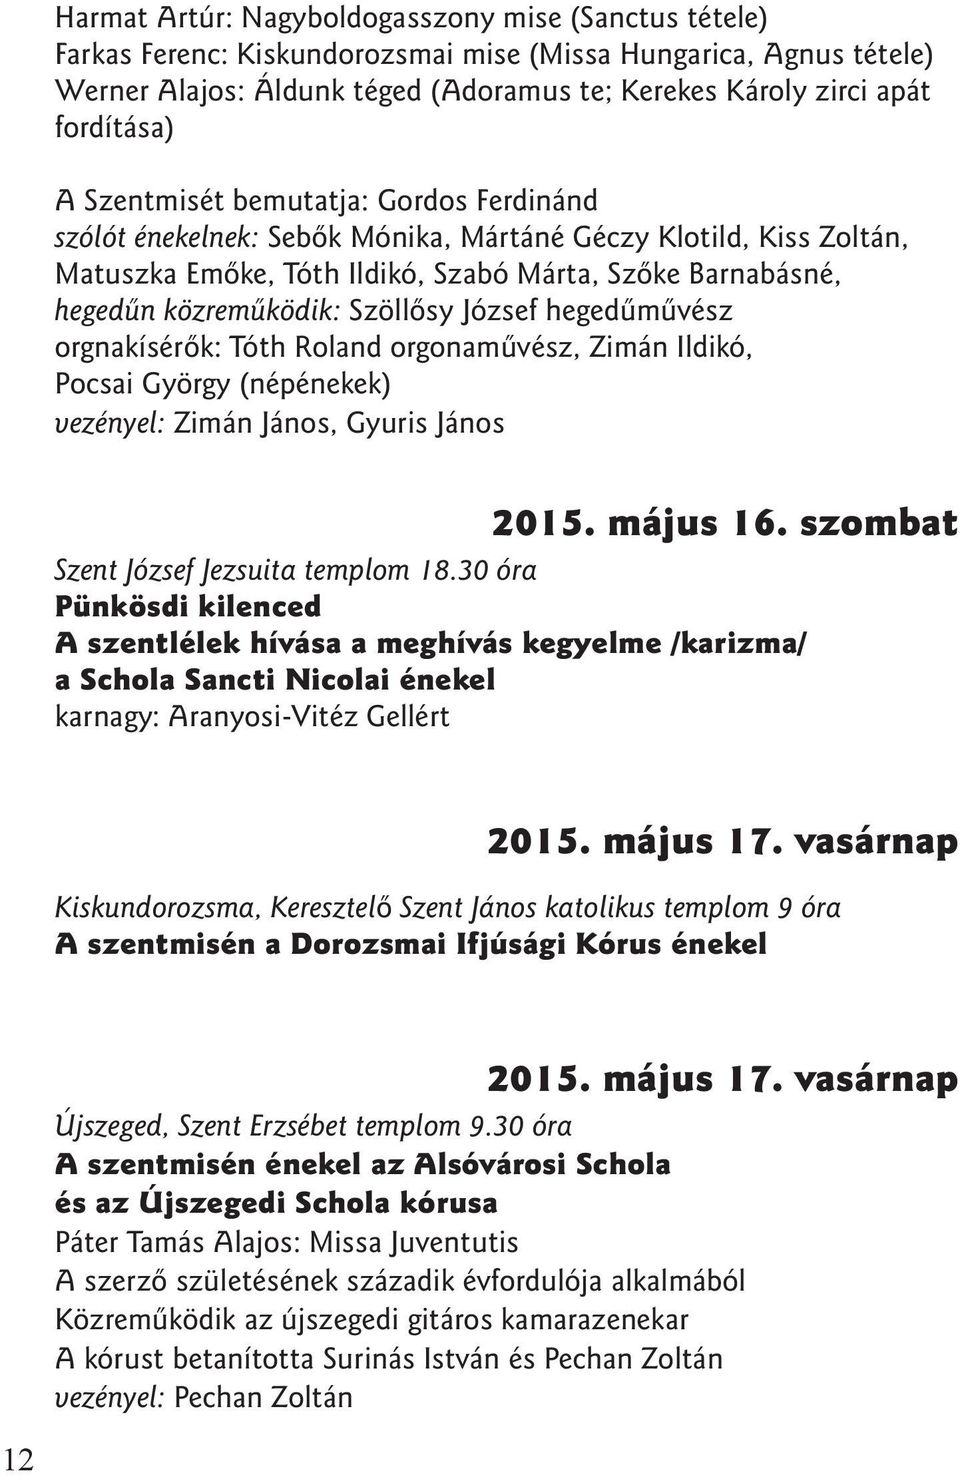 közremûködik: Szöllõsy József hegedûmûvész orgnakísérõk: Tóth Roland orgonamûvész, Zimán Ildikó, Pocsai György (népénekek) vezényel: Zimán János, Gyuris János 2015. május 16.